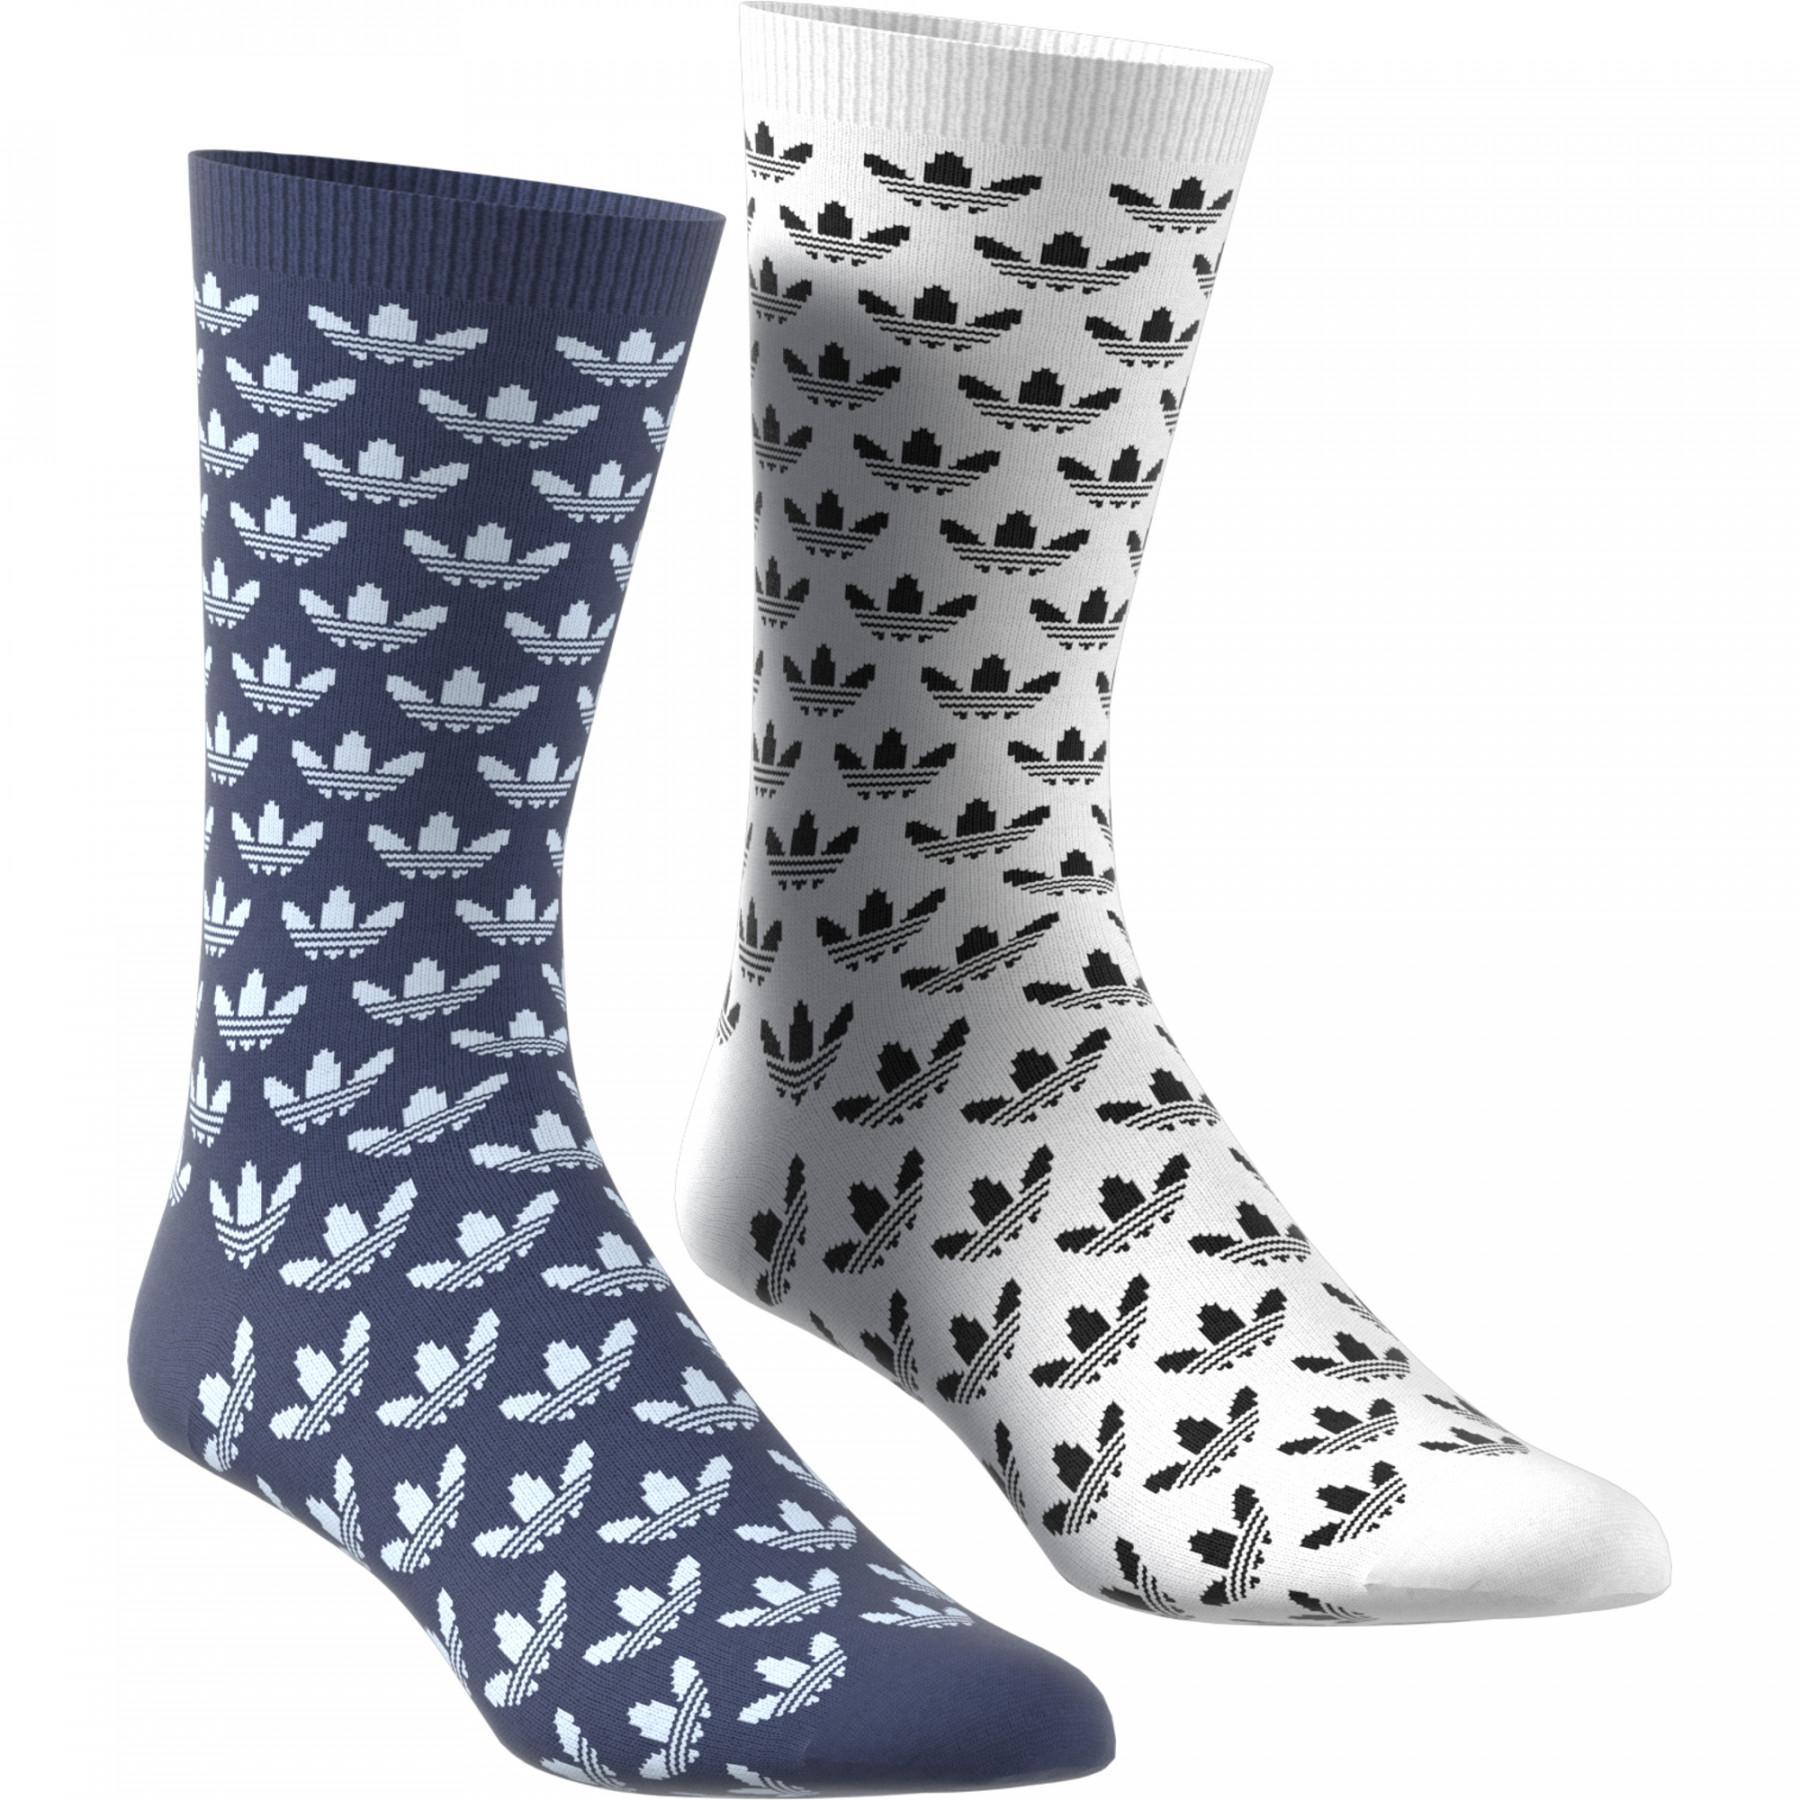 Middenkuit sokken adidas Originals Trefoil (2 paires)